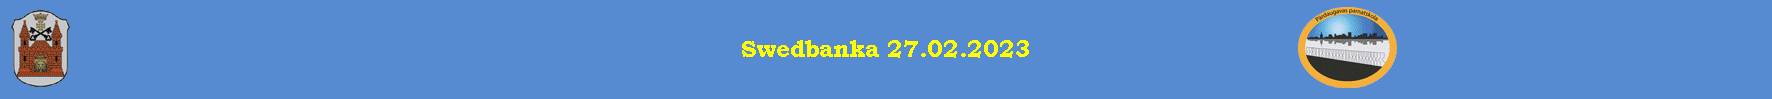 Swedbanka 27.02.2023